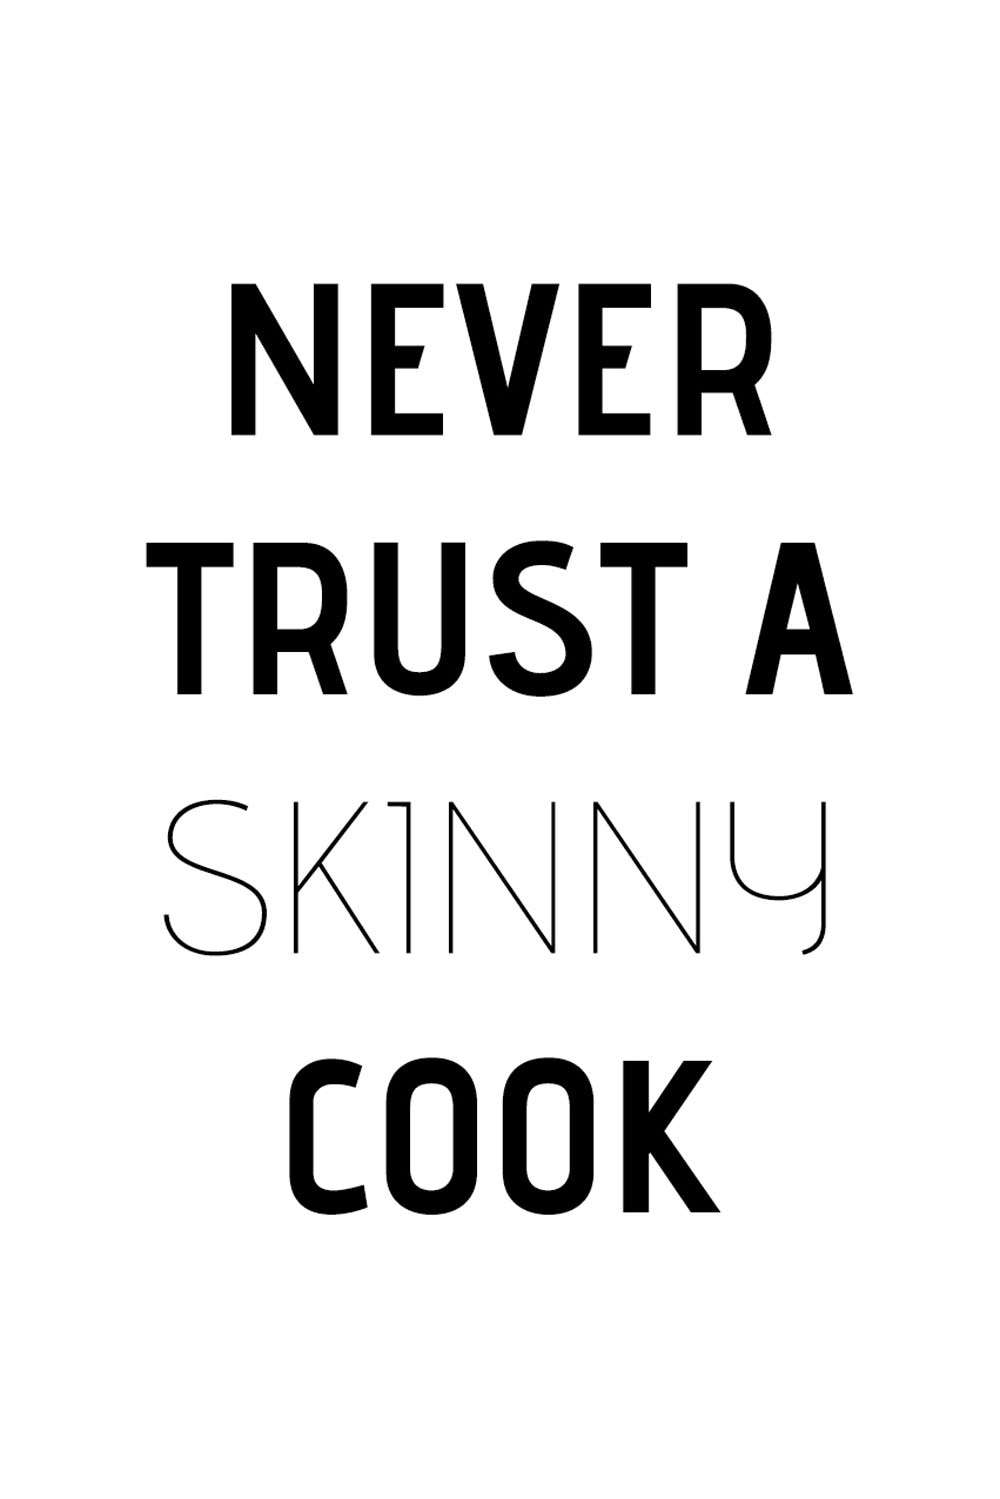 queence Wanddekoobjekt »Never trust a skinny cook«, Schriftzug auf Stahlblech